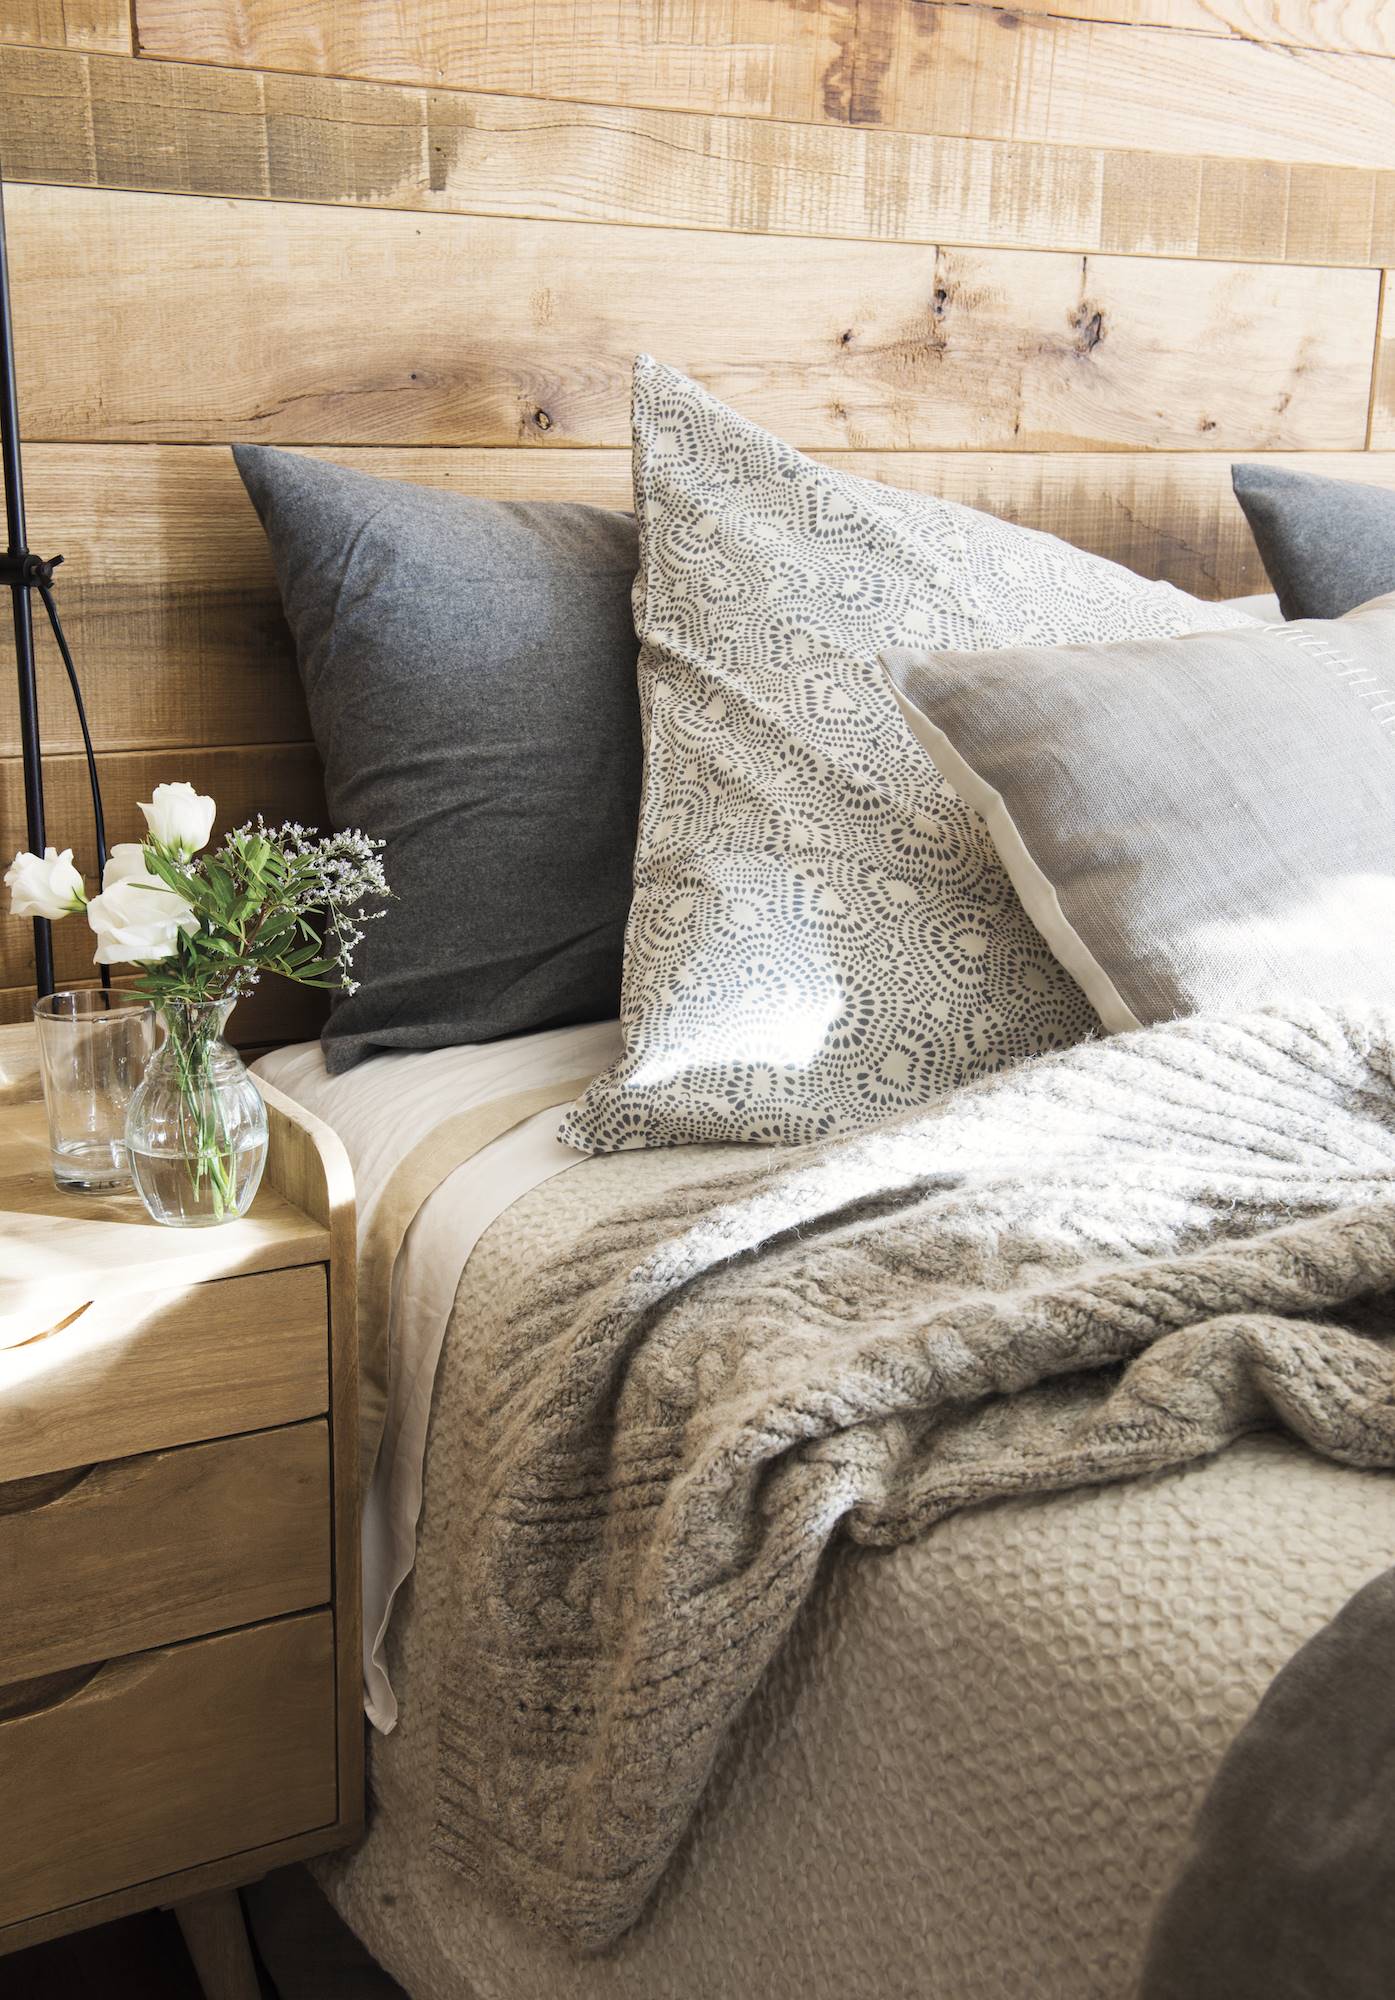 Detalle dormitorio con cabezal de madera y ropa franela gris.